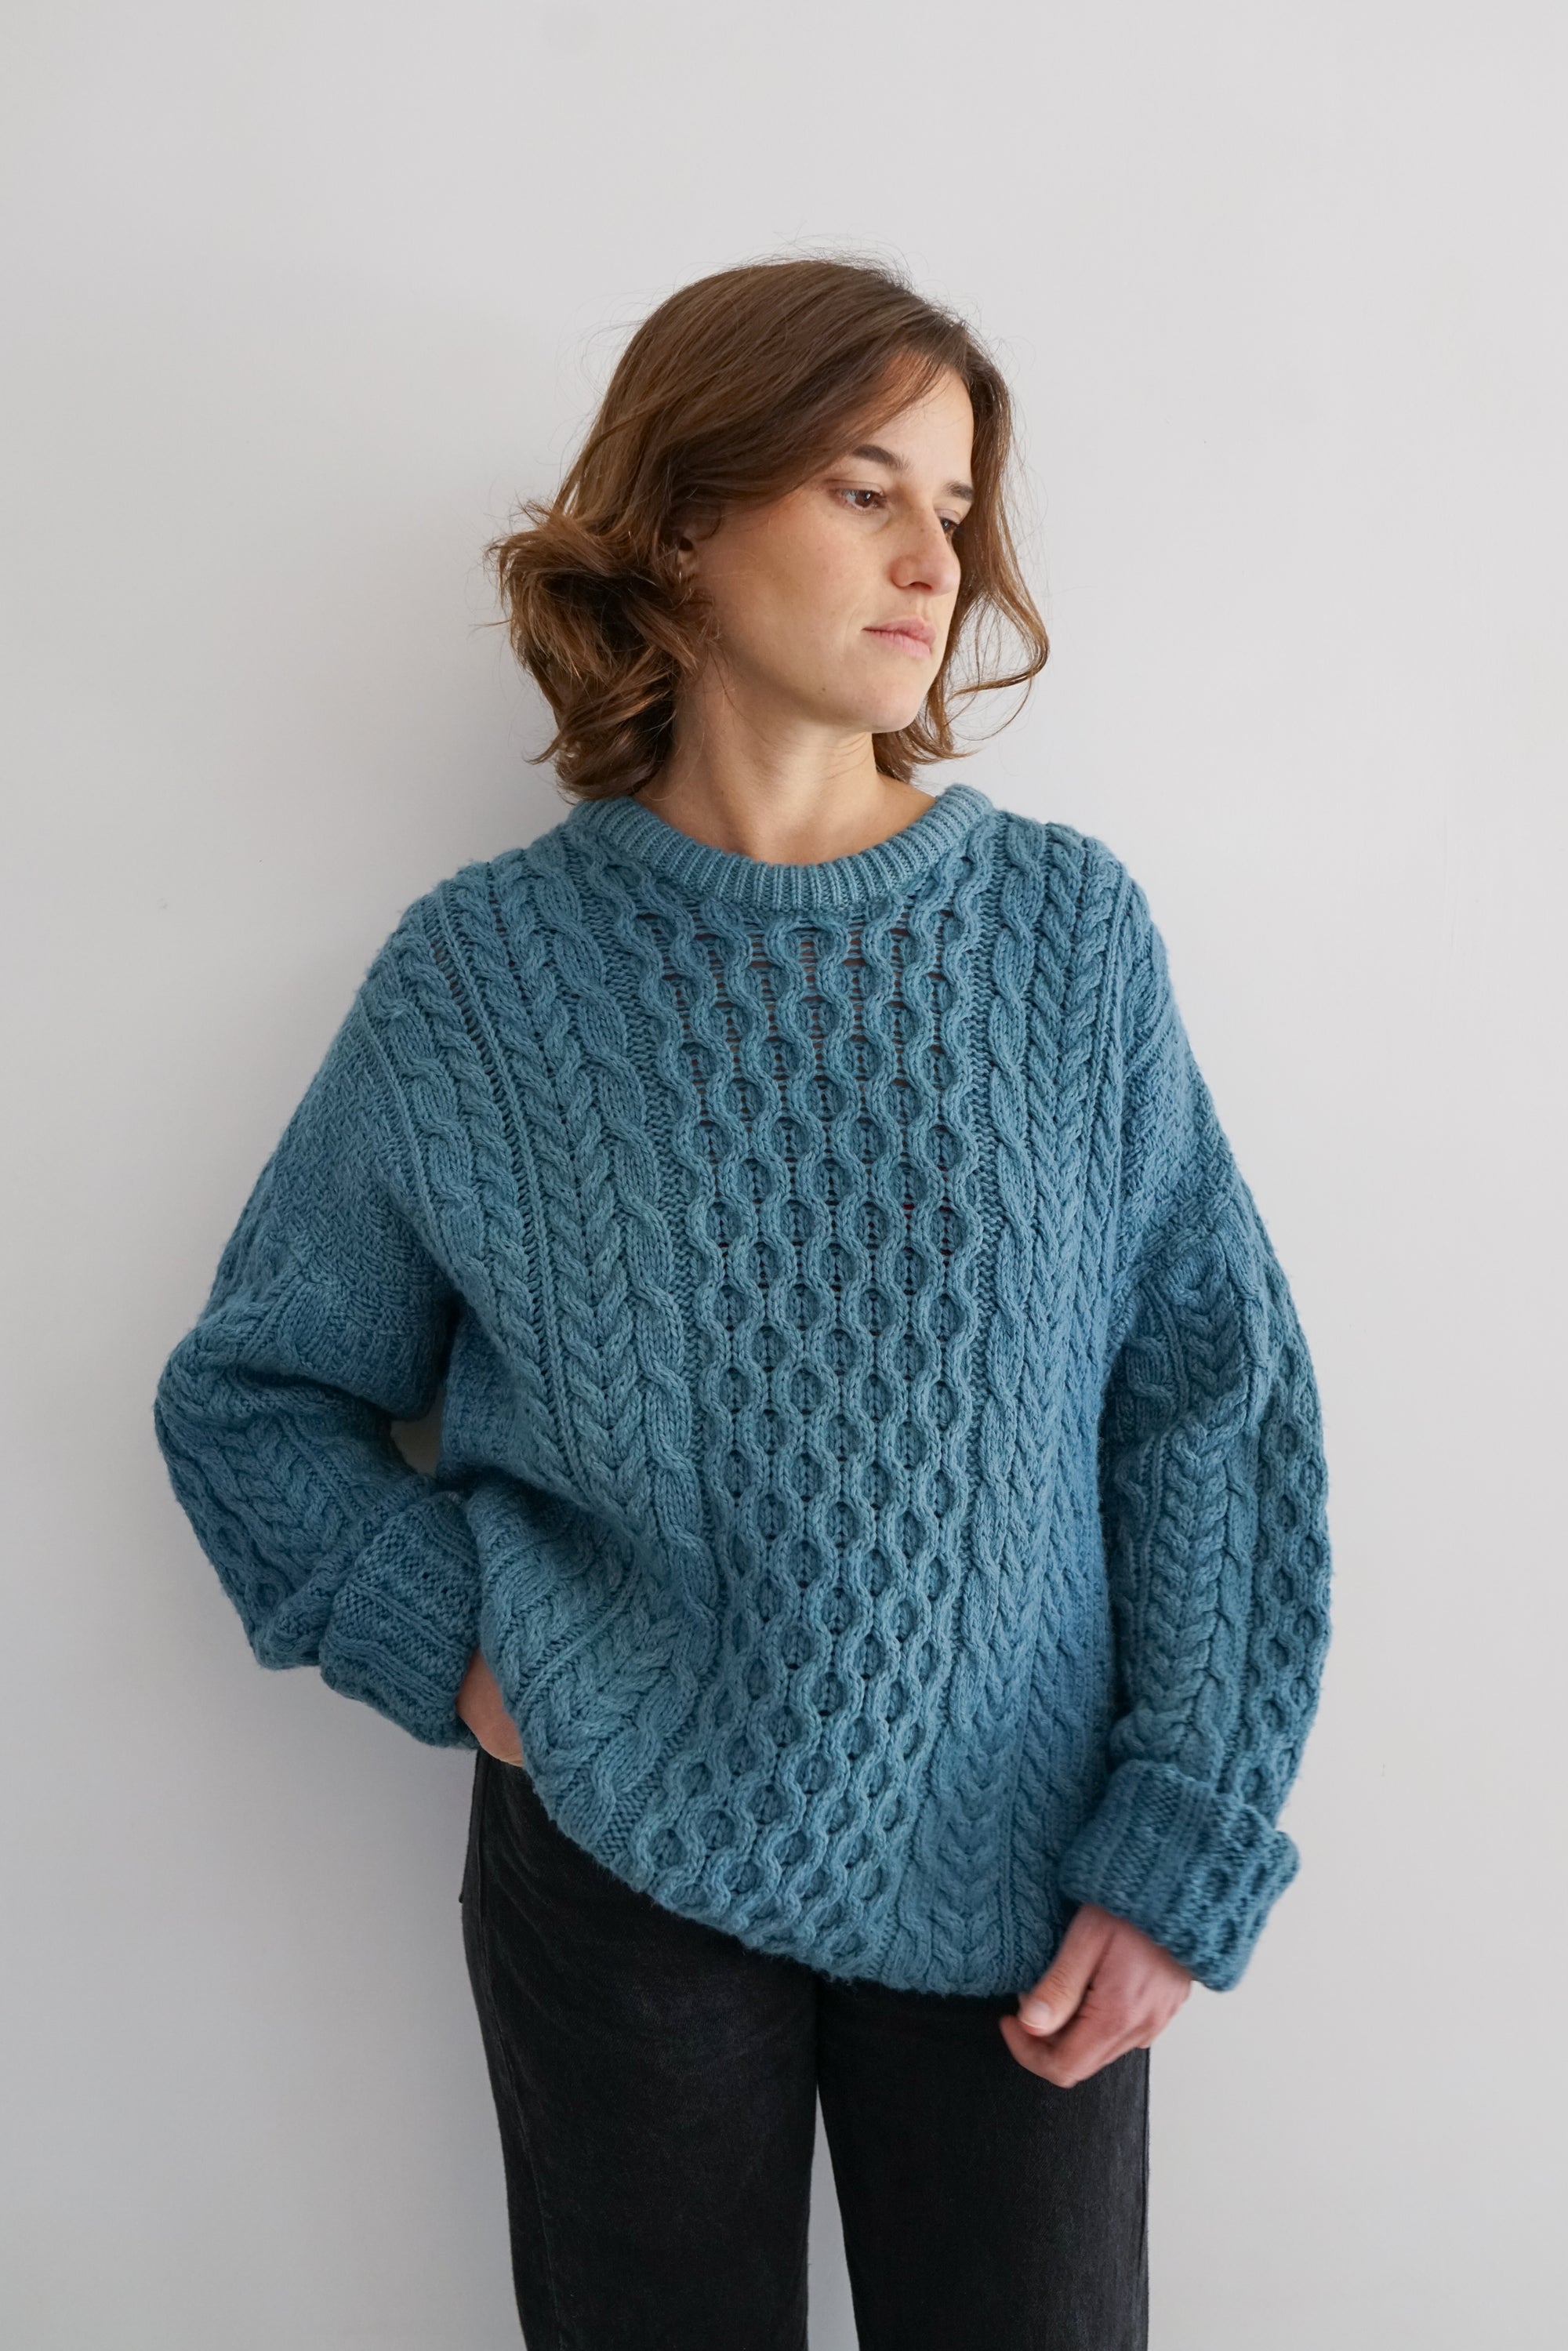 Indigo Dye Vintage Fisherman Knit Sweater